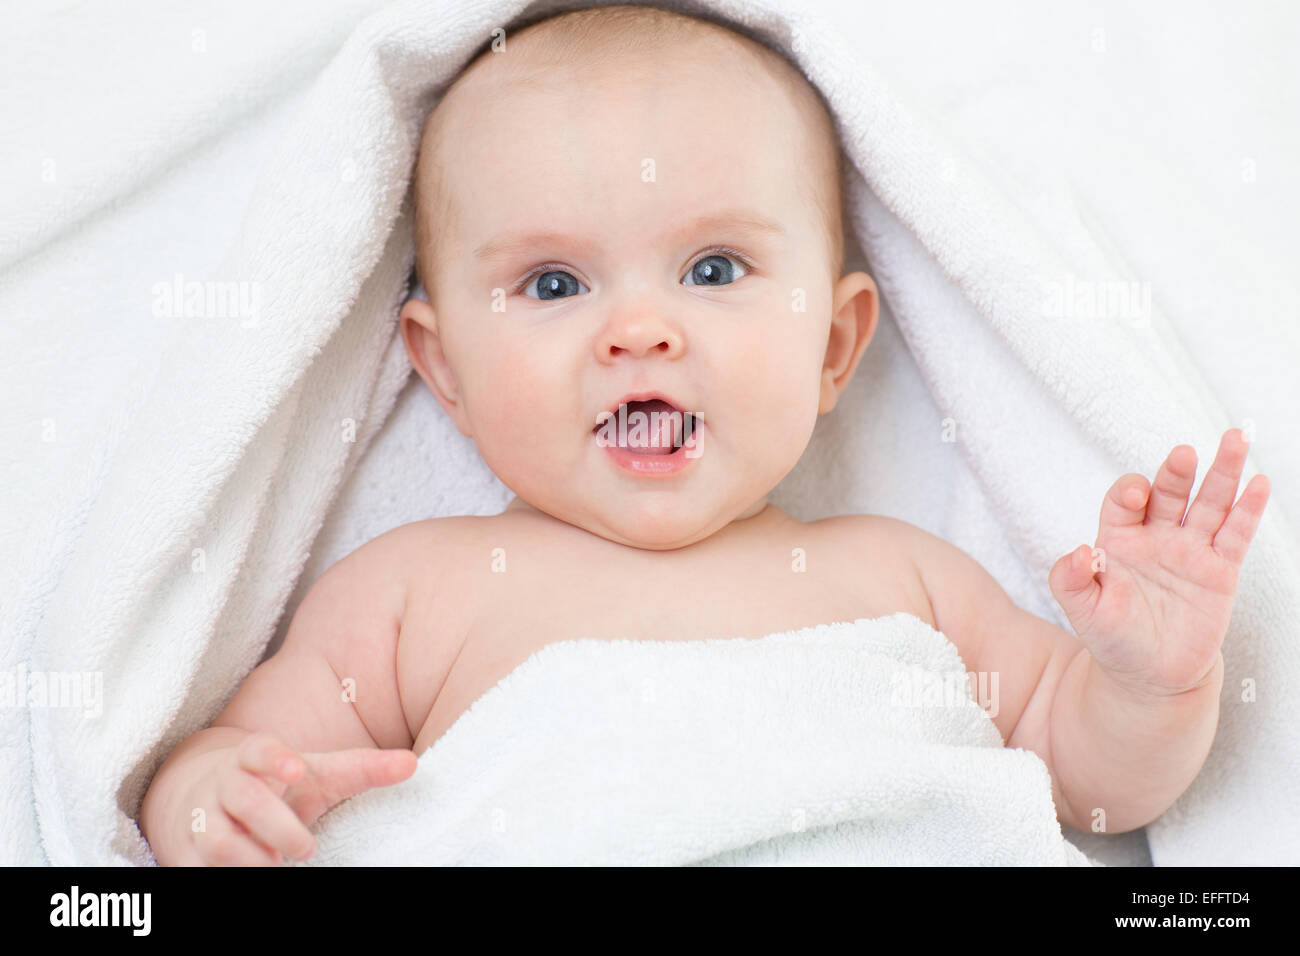 Cute smiling baby portrait couché sur une serviette de bain Banque D'Images